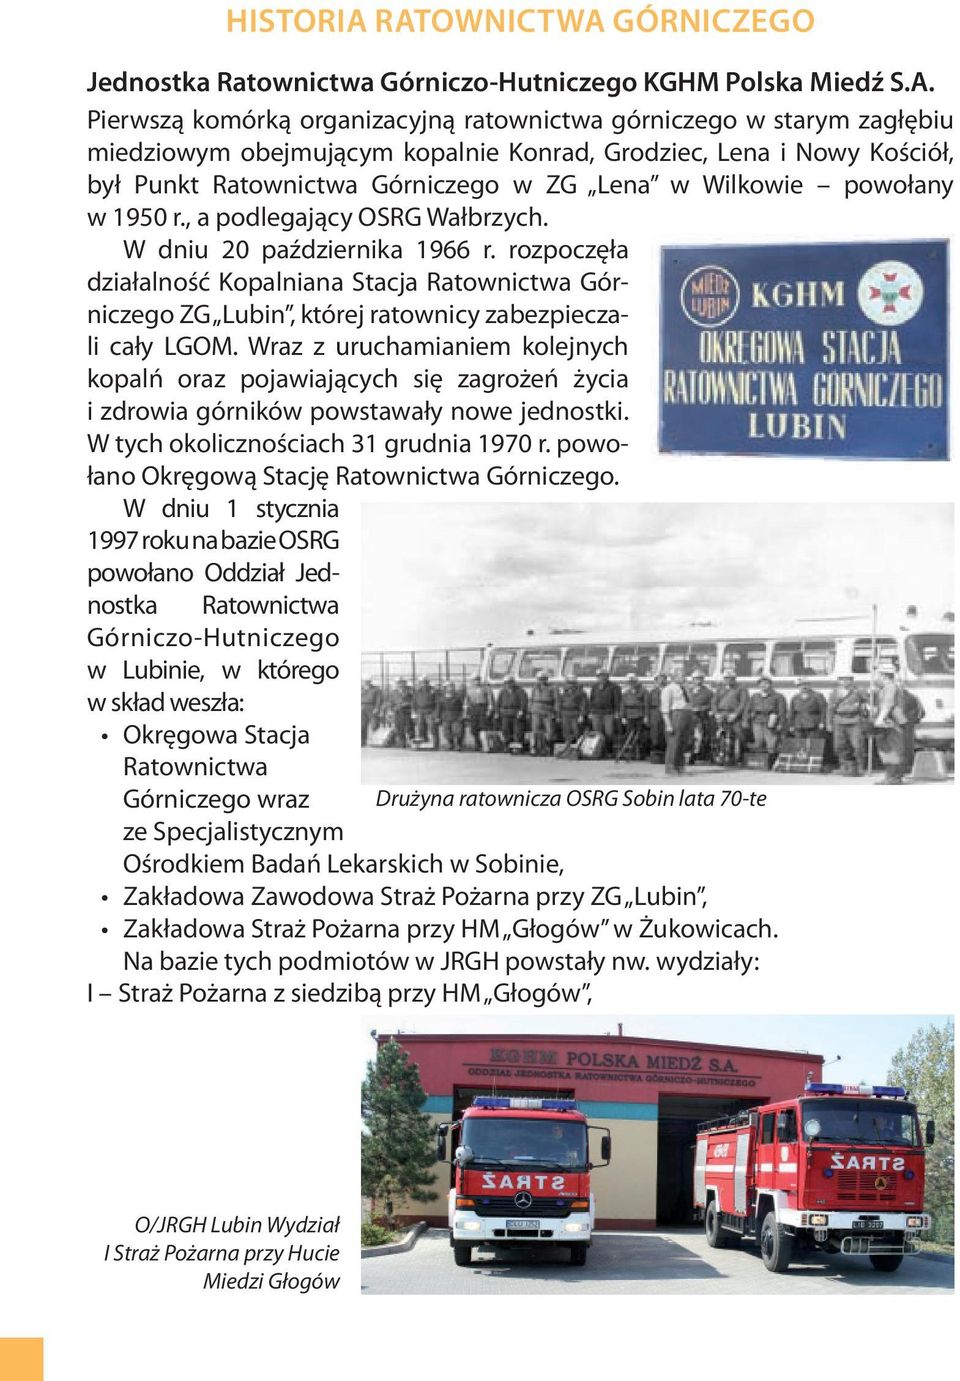 Grodziec, Lena i Nowy Kościół, był Punkt Ratownictwa Górniczego w ZG Lena w Wilkowie powołany w 1950 r., a podlegający OSRG Wałbrzych. W dniu 20 października 1966 r.